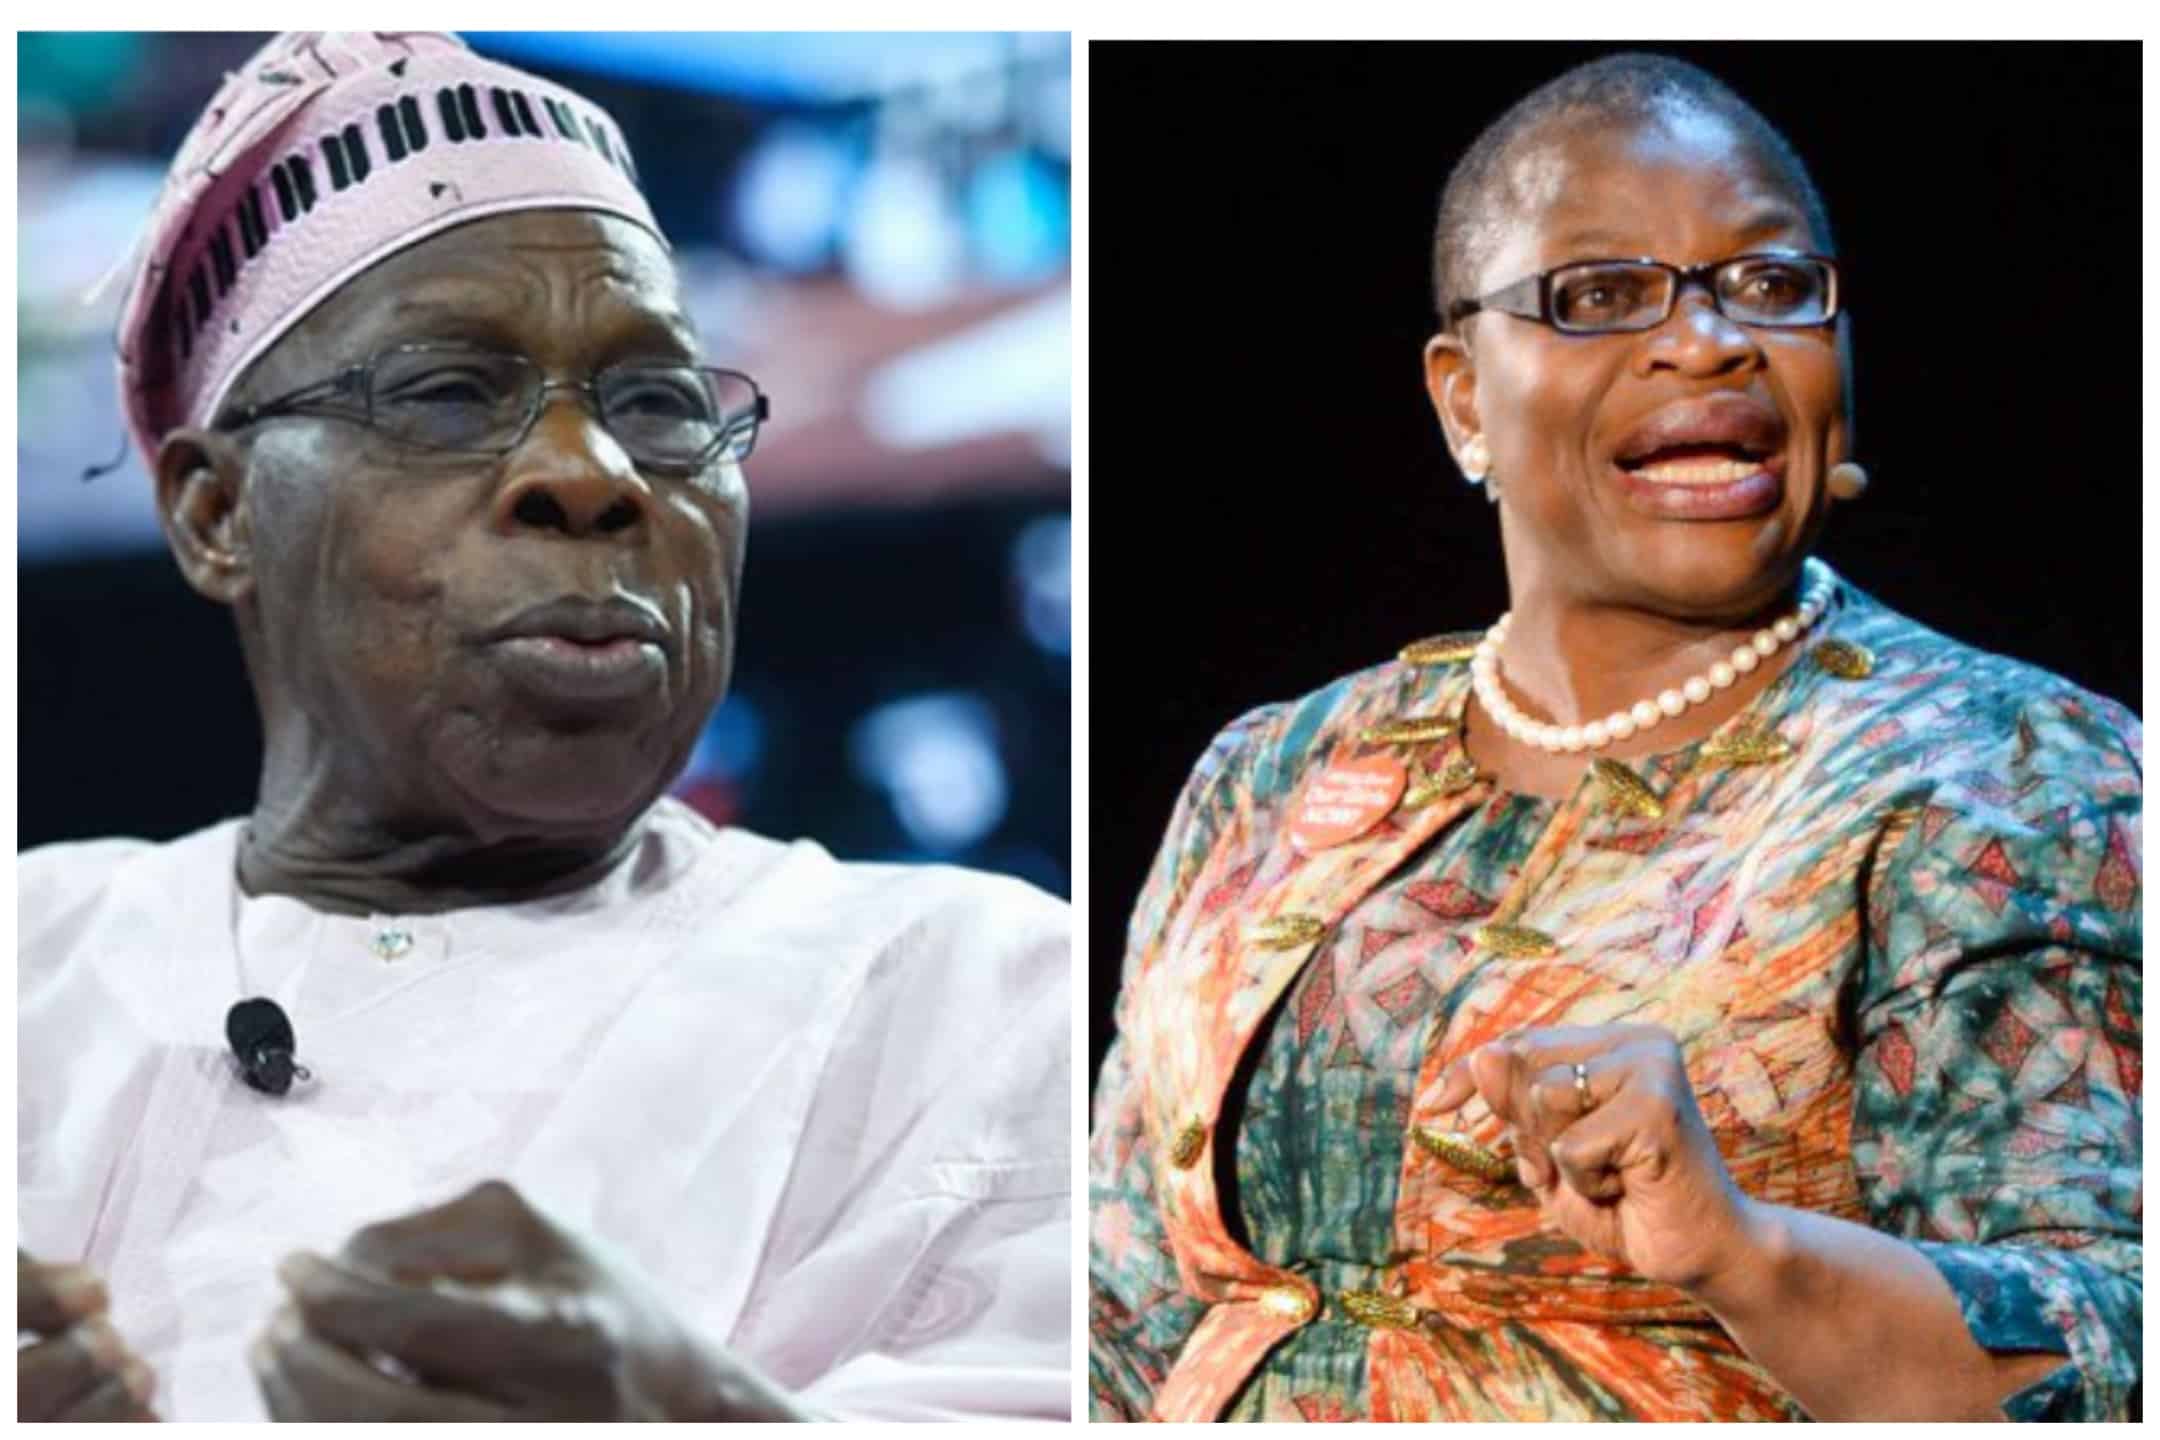 Ezekwesili and Obasanjo